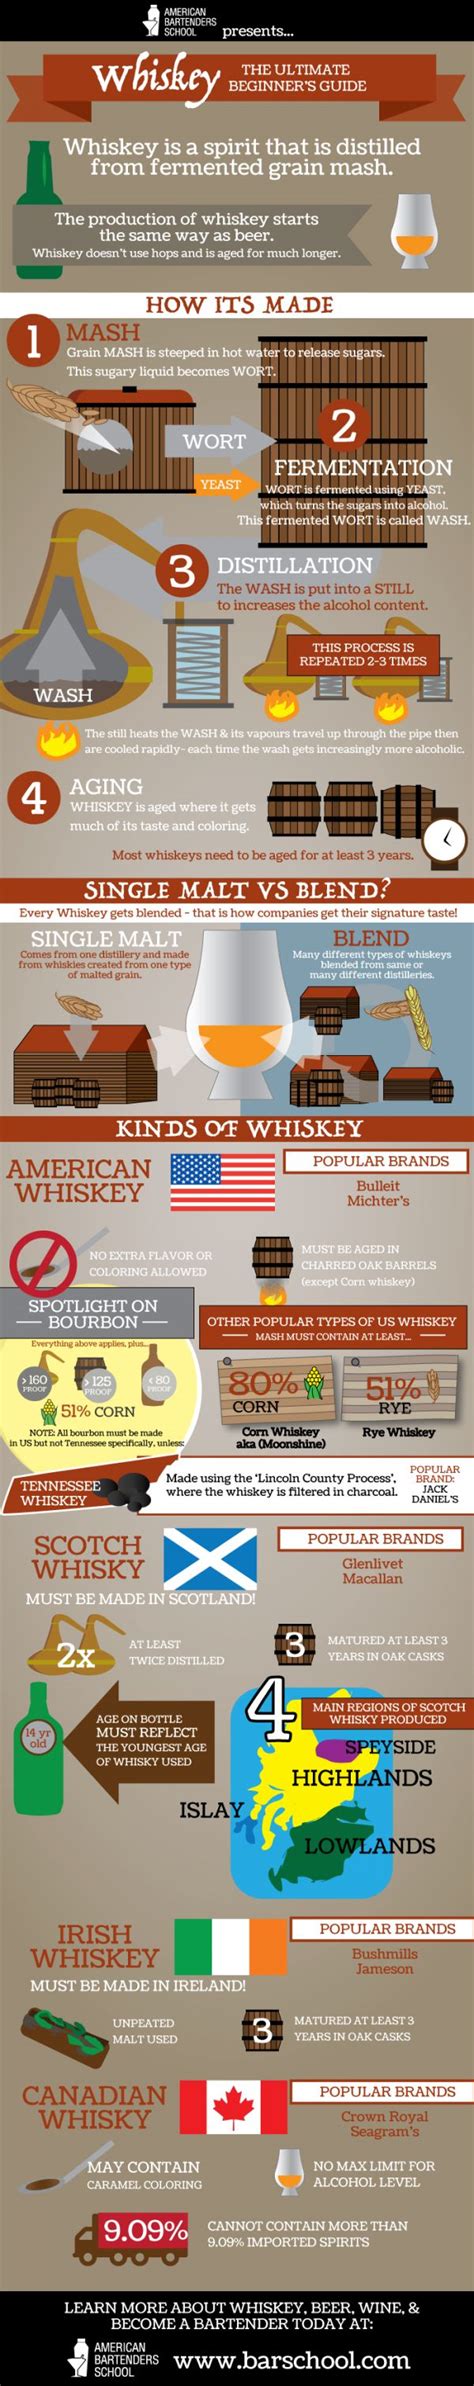 1000 Images About Whisky Whiskey On Pinterest Irish Whiskey Isle